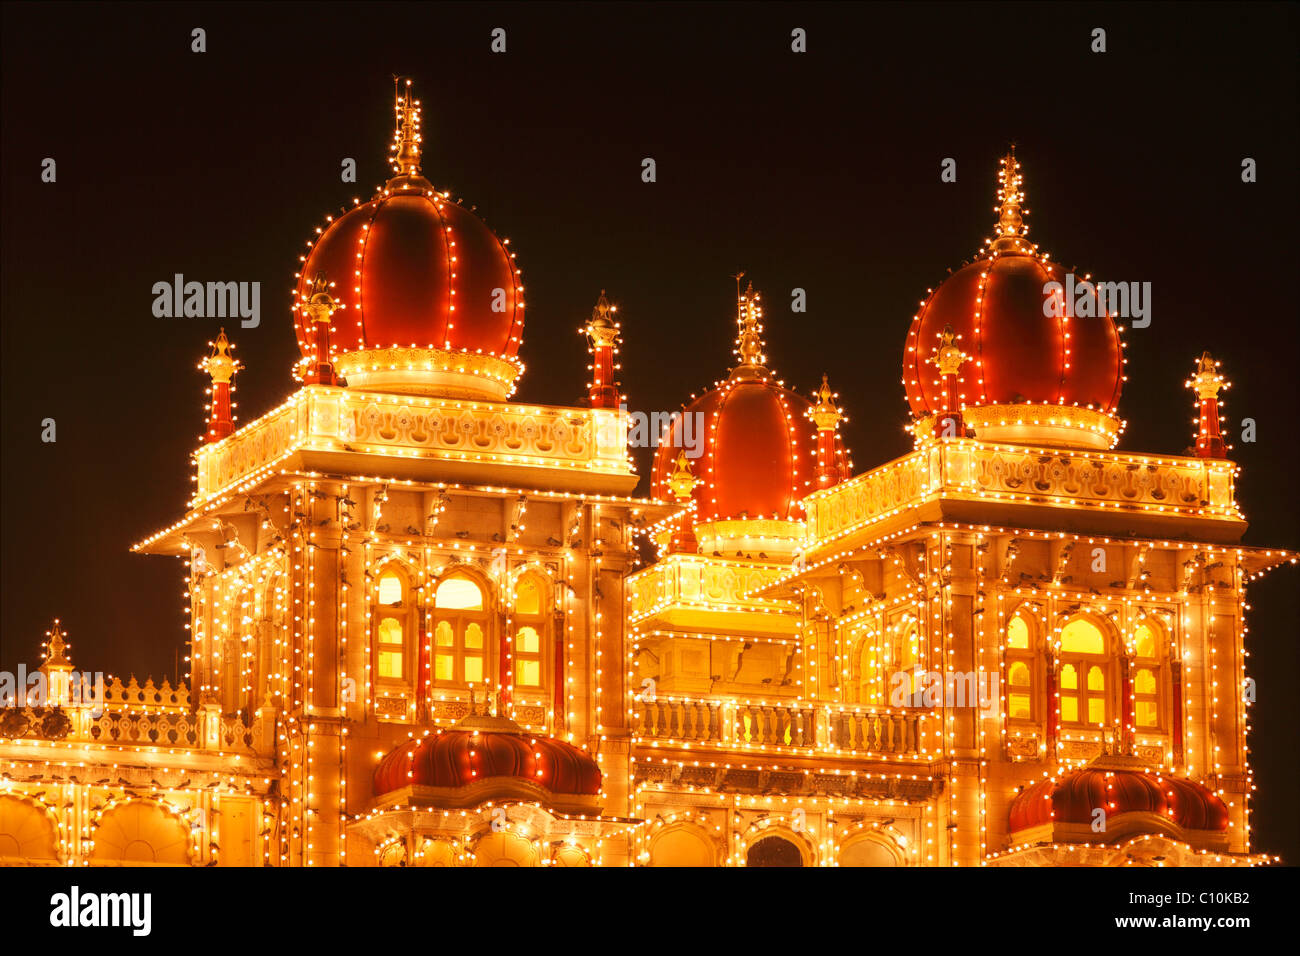 Détail de Maharaja's Palace, palais de Mysore, Amba Vilas, illumination sur un dimanche avec les ampoules, , l'Inde du Sud, Inde Banque D'Images